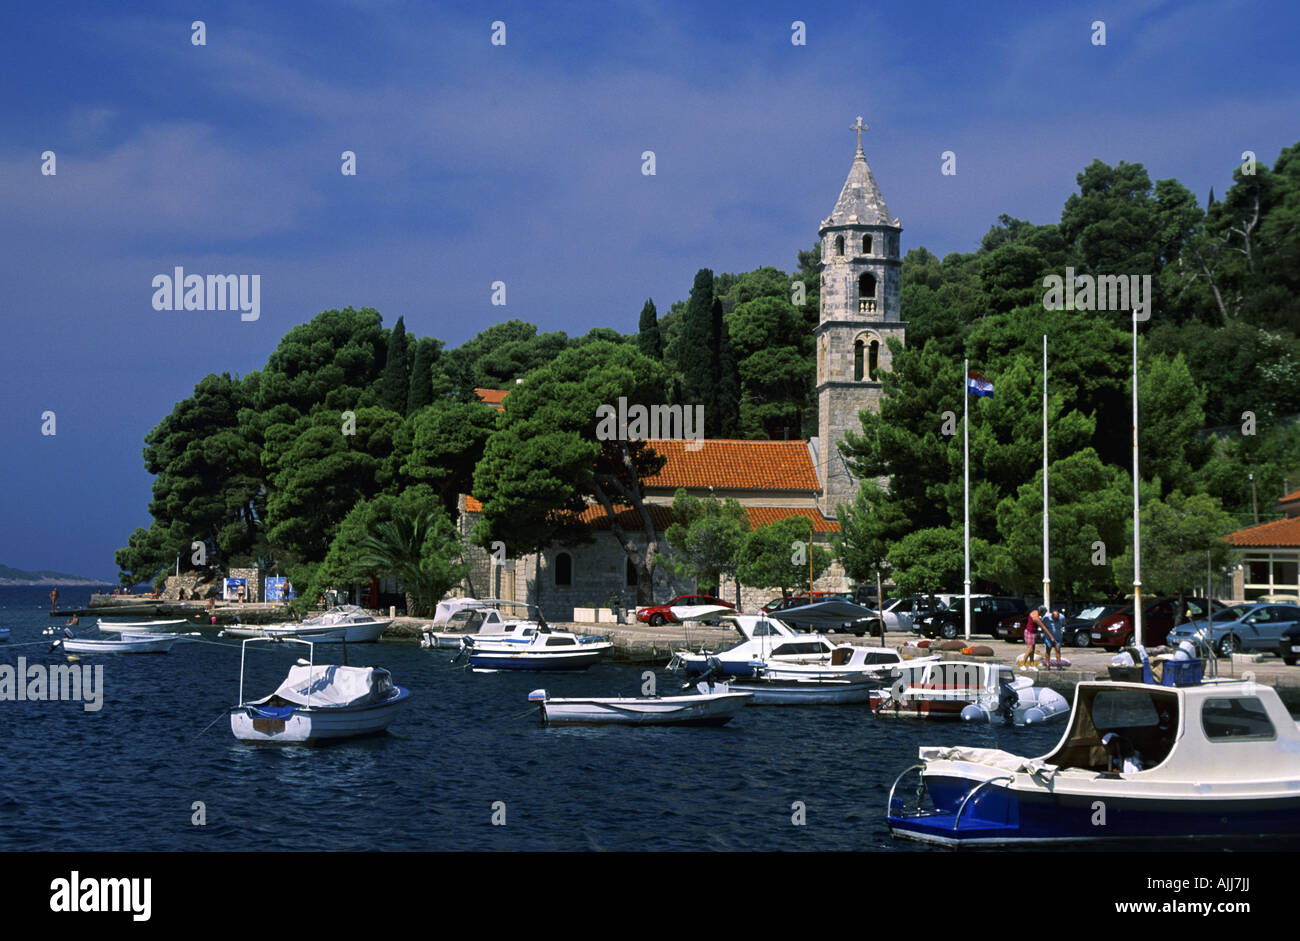 Kroatien Dalmatien Cavtat, Hafen von Cavtat | Croatia Dalmatia Cavtat, Harbor of Cavtat Stock Photo